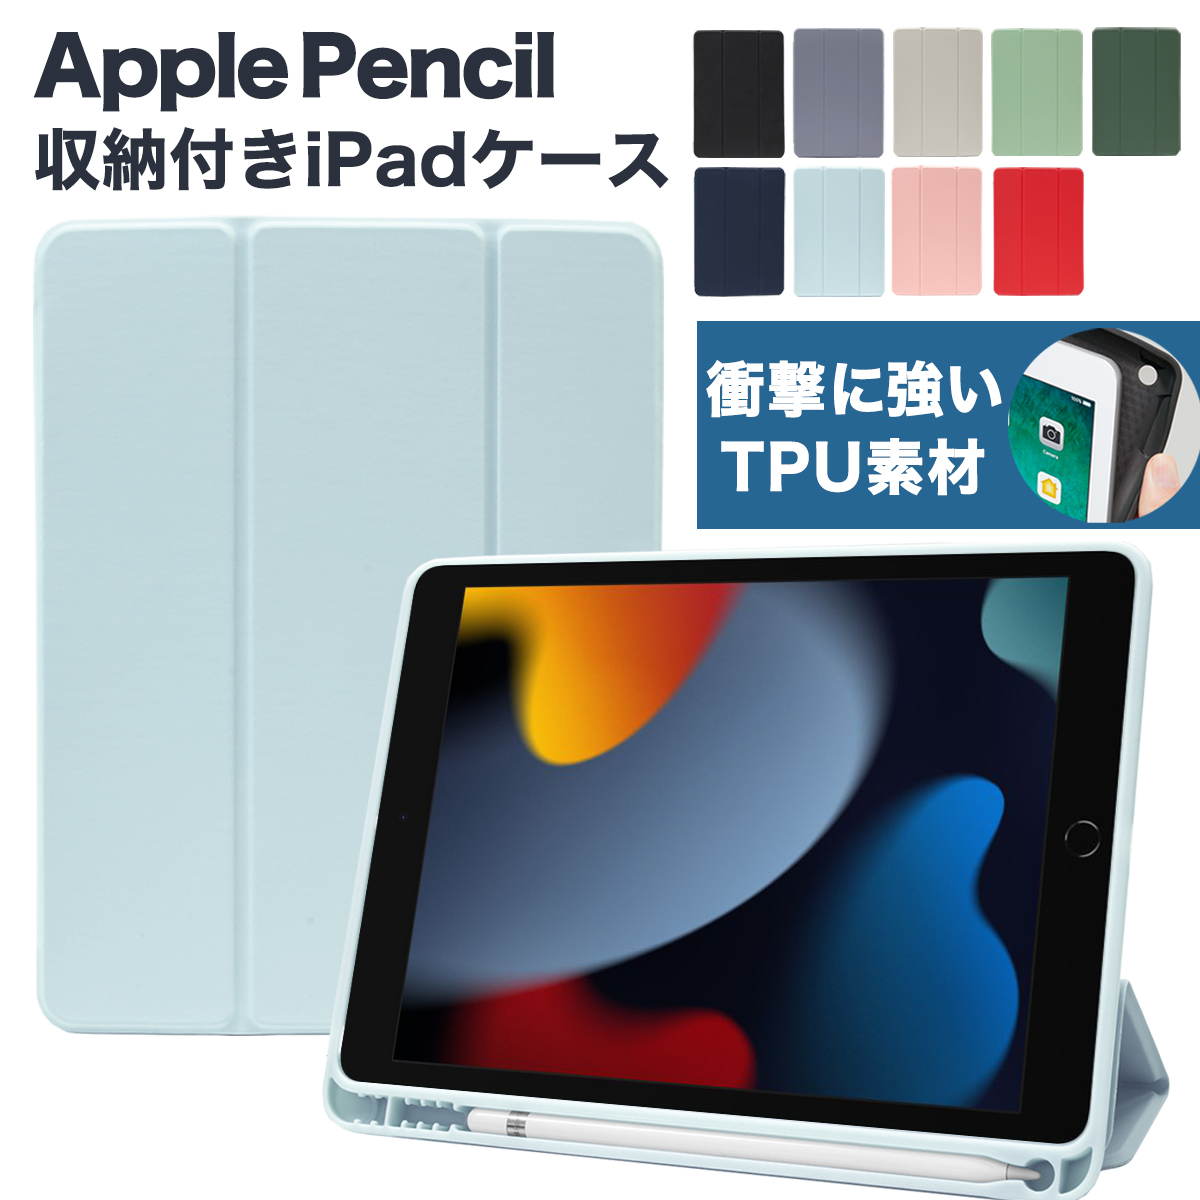 37740円 販売実績No.1 iPad mini第6世代 Apple Pencil付き